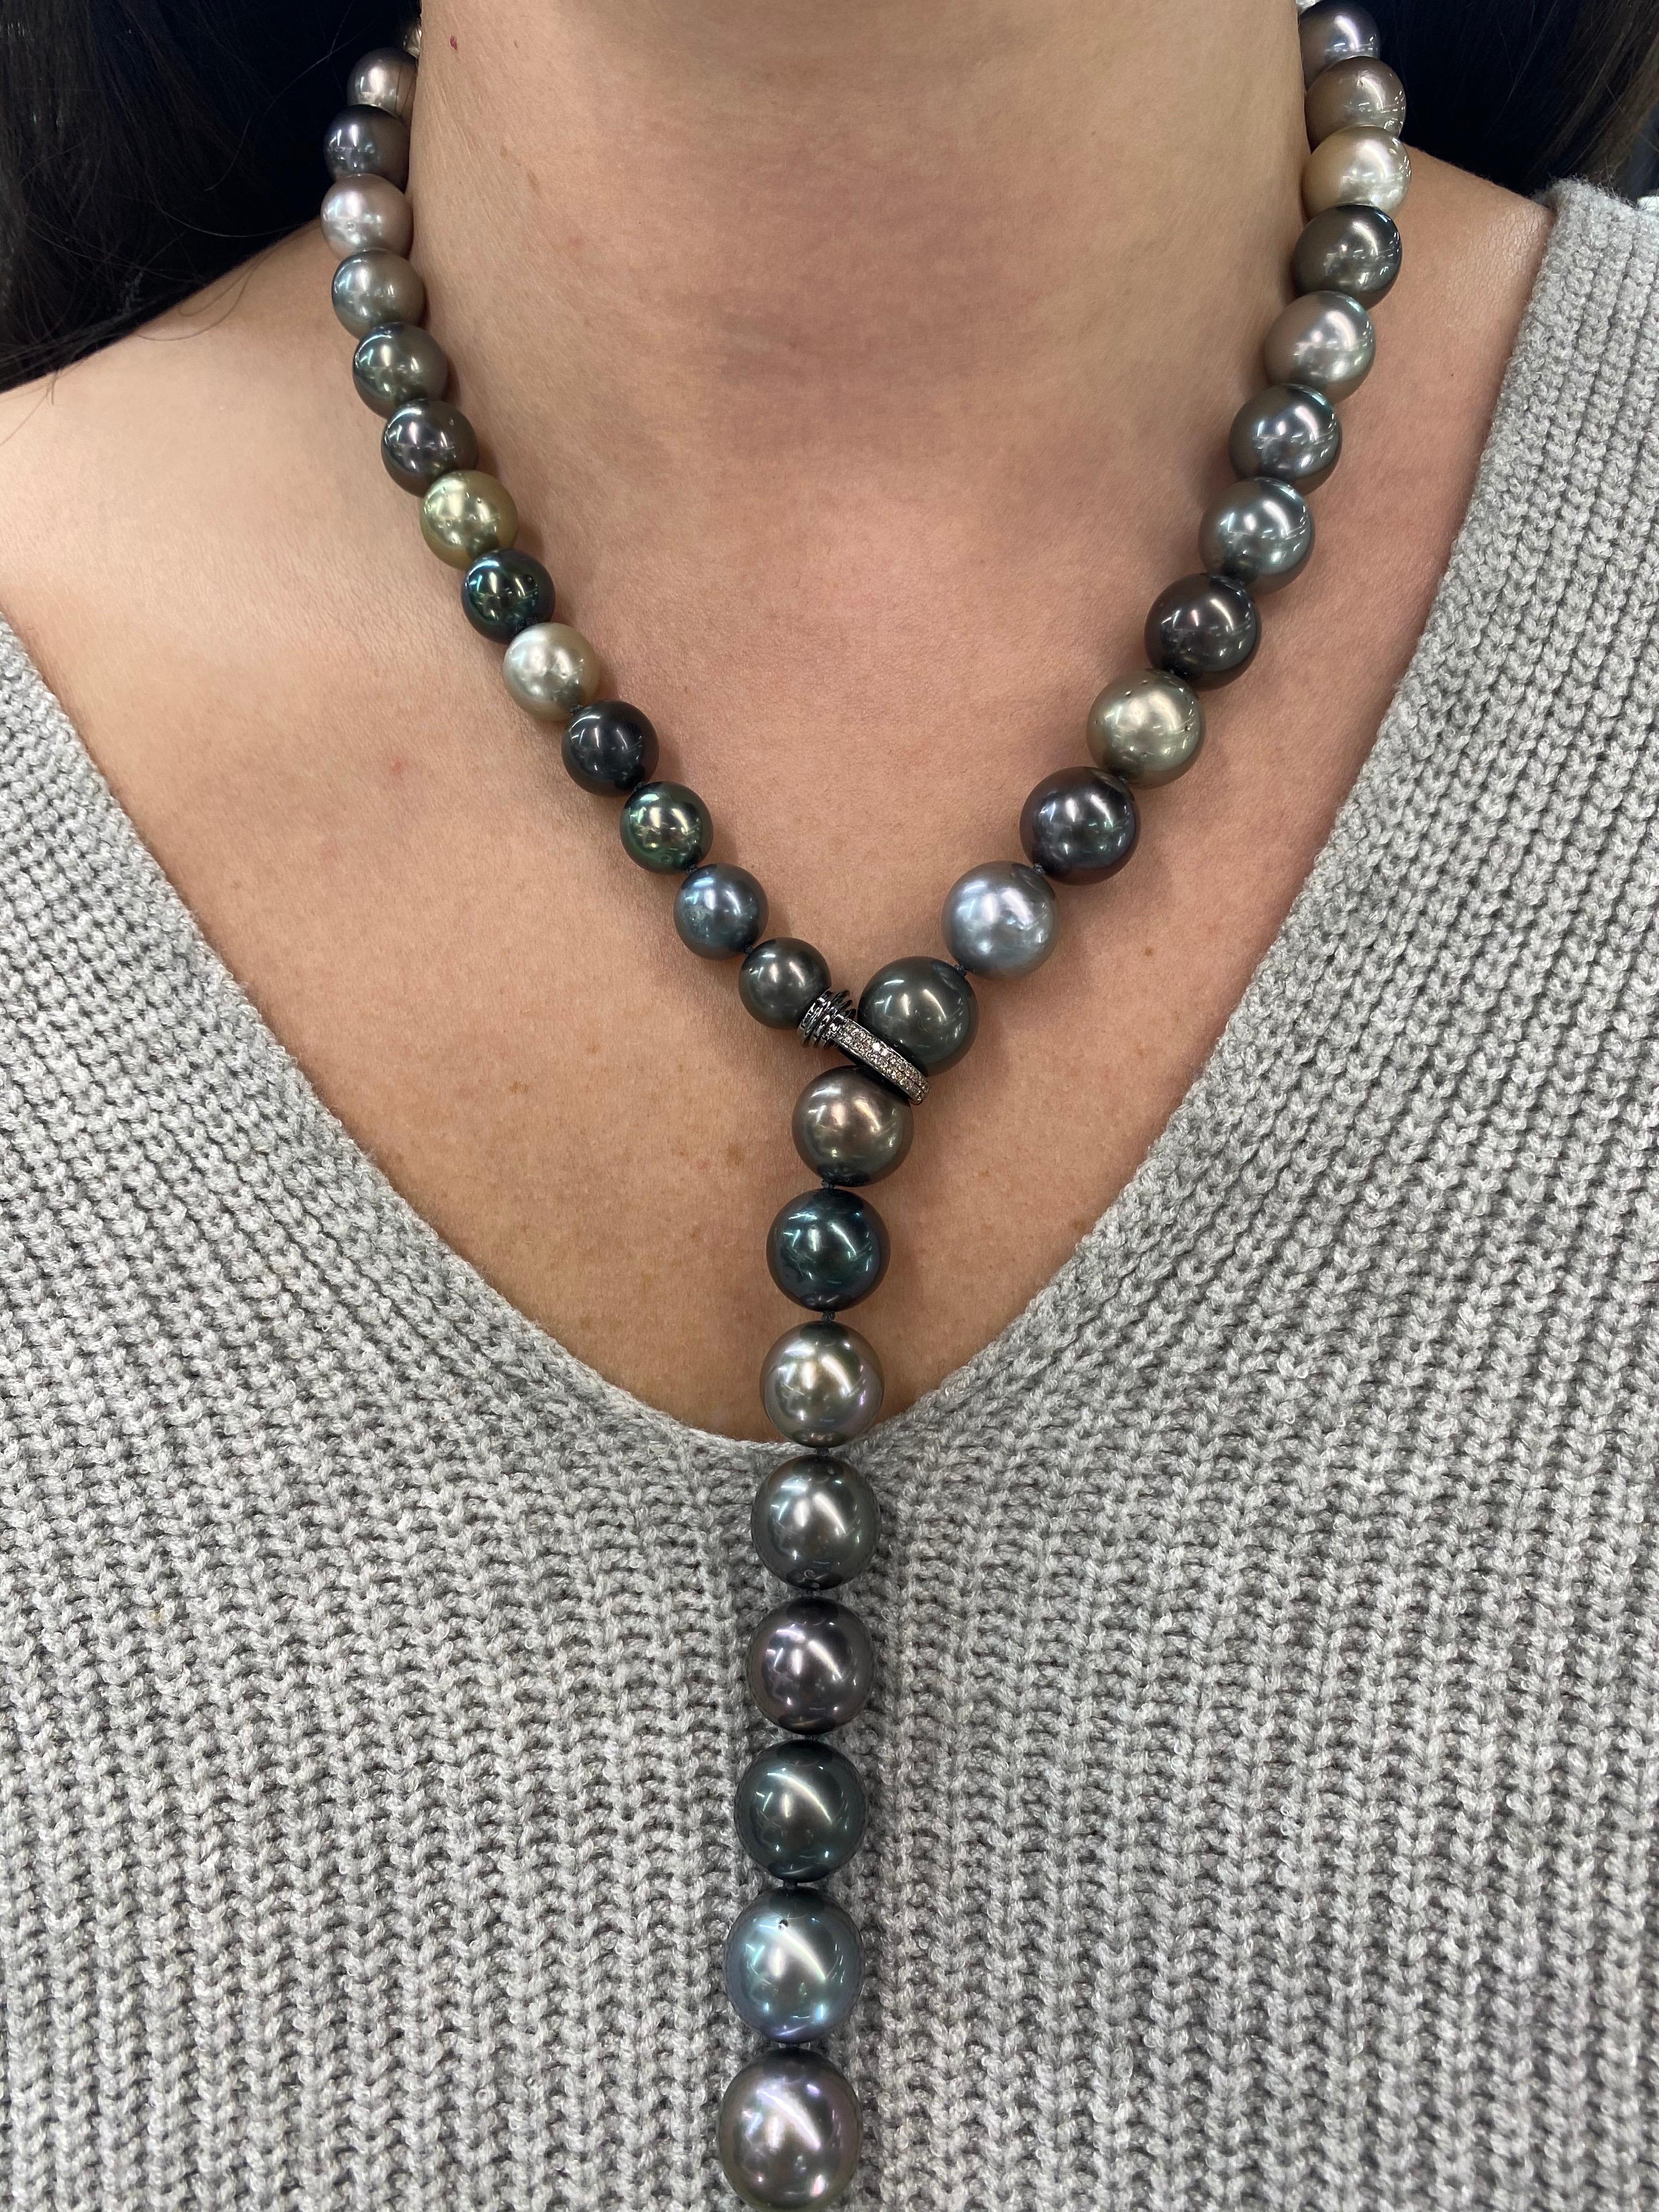 Schicke Südsee-Tahiti-Perlenkette mit 36 Perlen von 10,4-12,5 mm und einem Diamantverschluss auf der Vorderseite. 
Qualität der Perlen: AAA
Perlglanz: AAA Ausgezeichnet
Perlmutt : Sehr dick

Der Strang kann auf Bestellung gekürzt oder verlängert